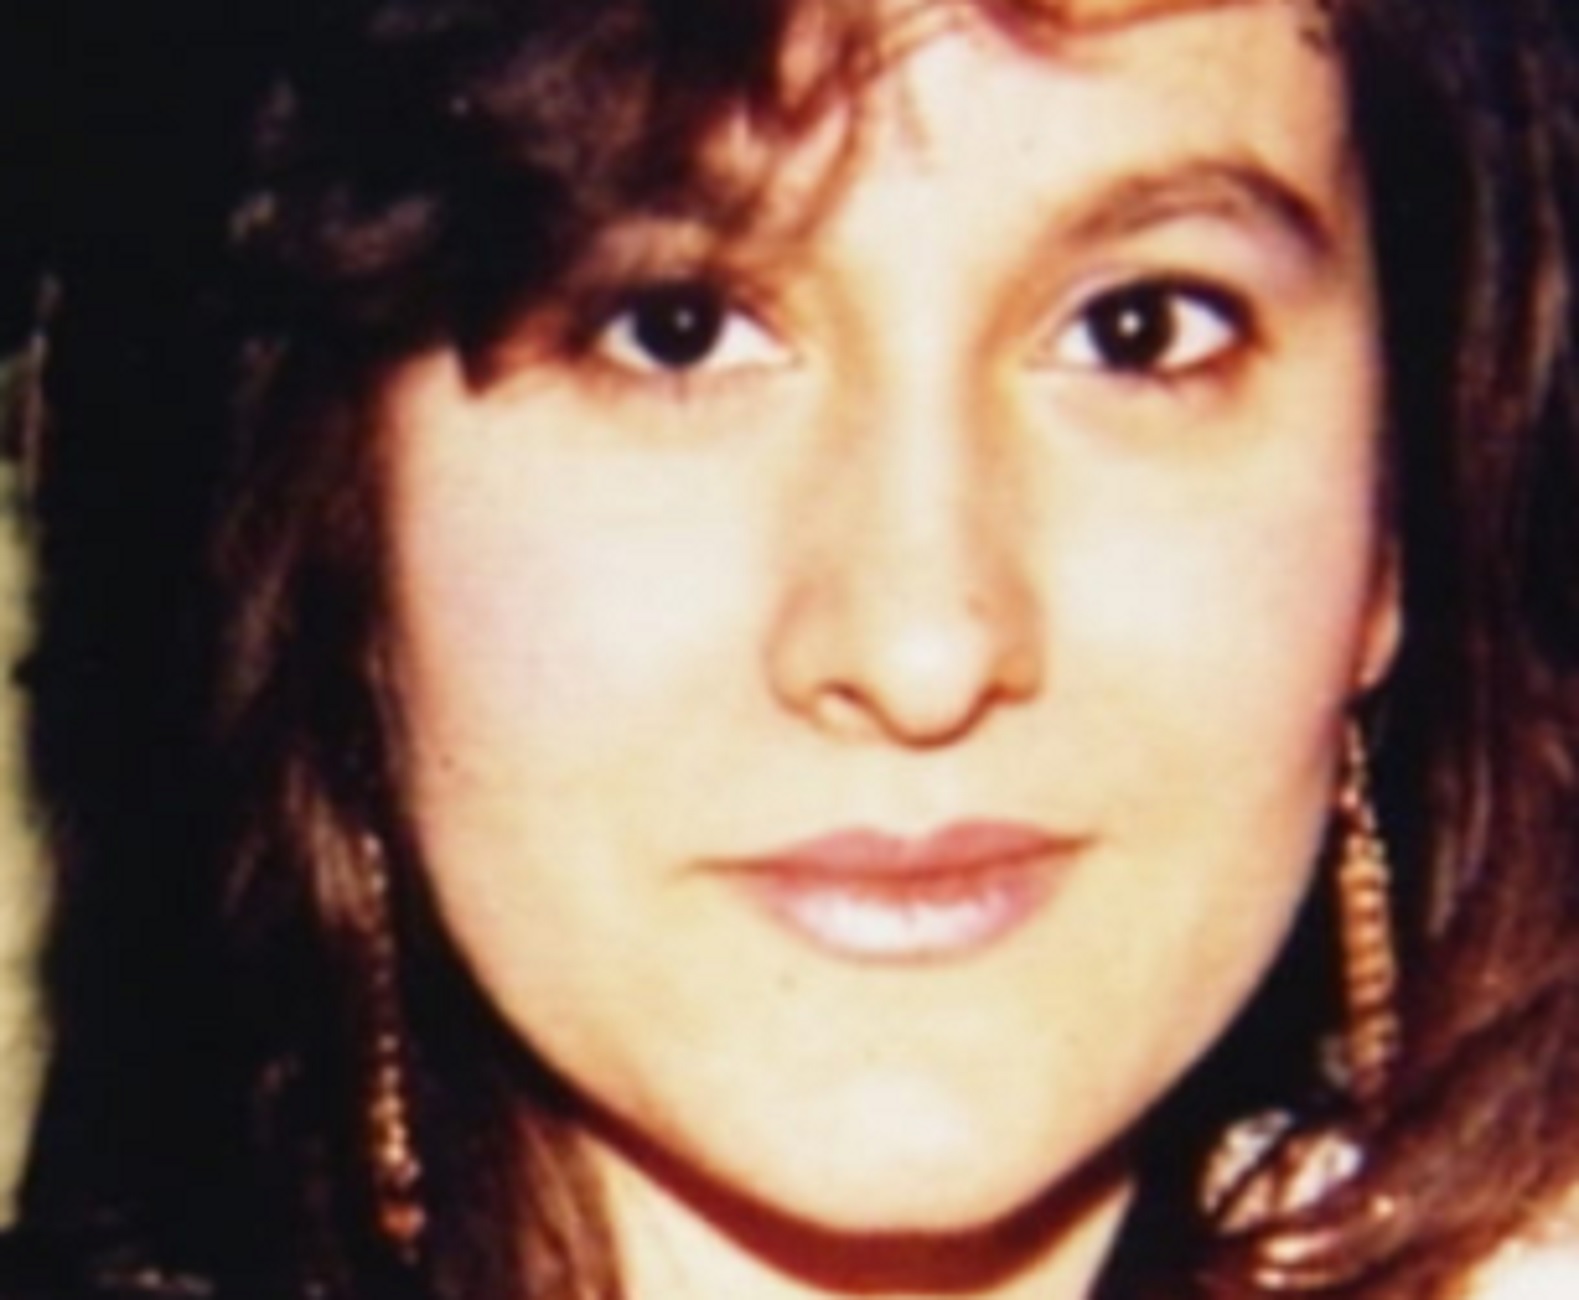 Θεσσαλονίκη: Σκότωσε τεμάχισε και έθαψε την Τάνια Χαριτοπούλου – Το απόλυτο σοκ 22 χρόνια μετά (video)